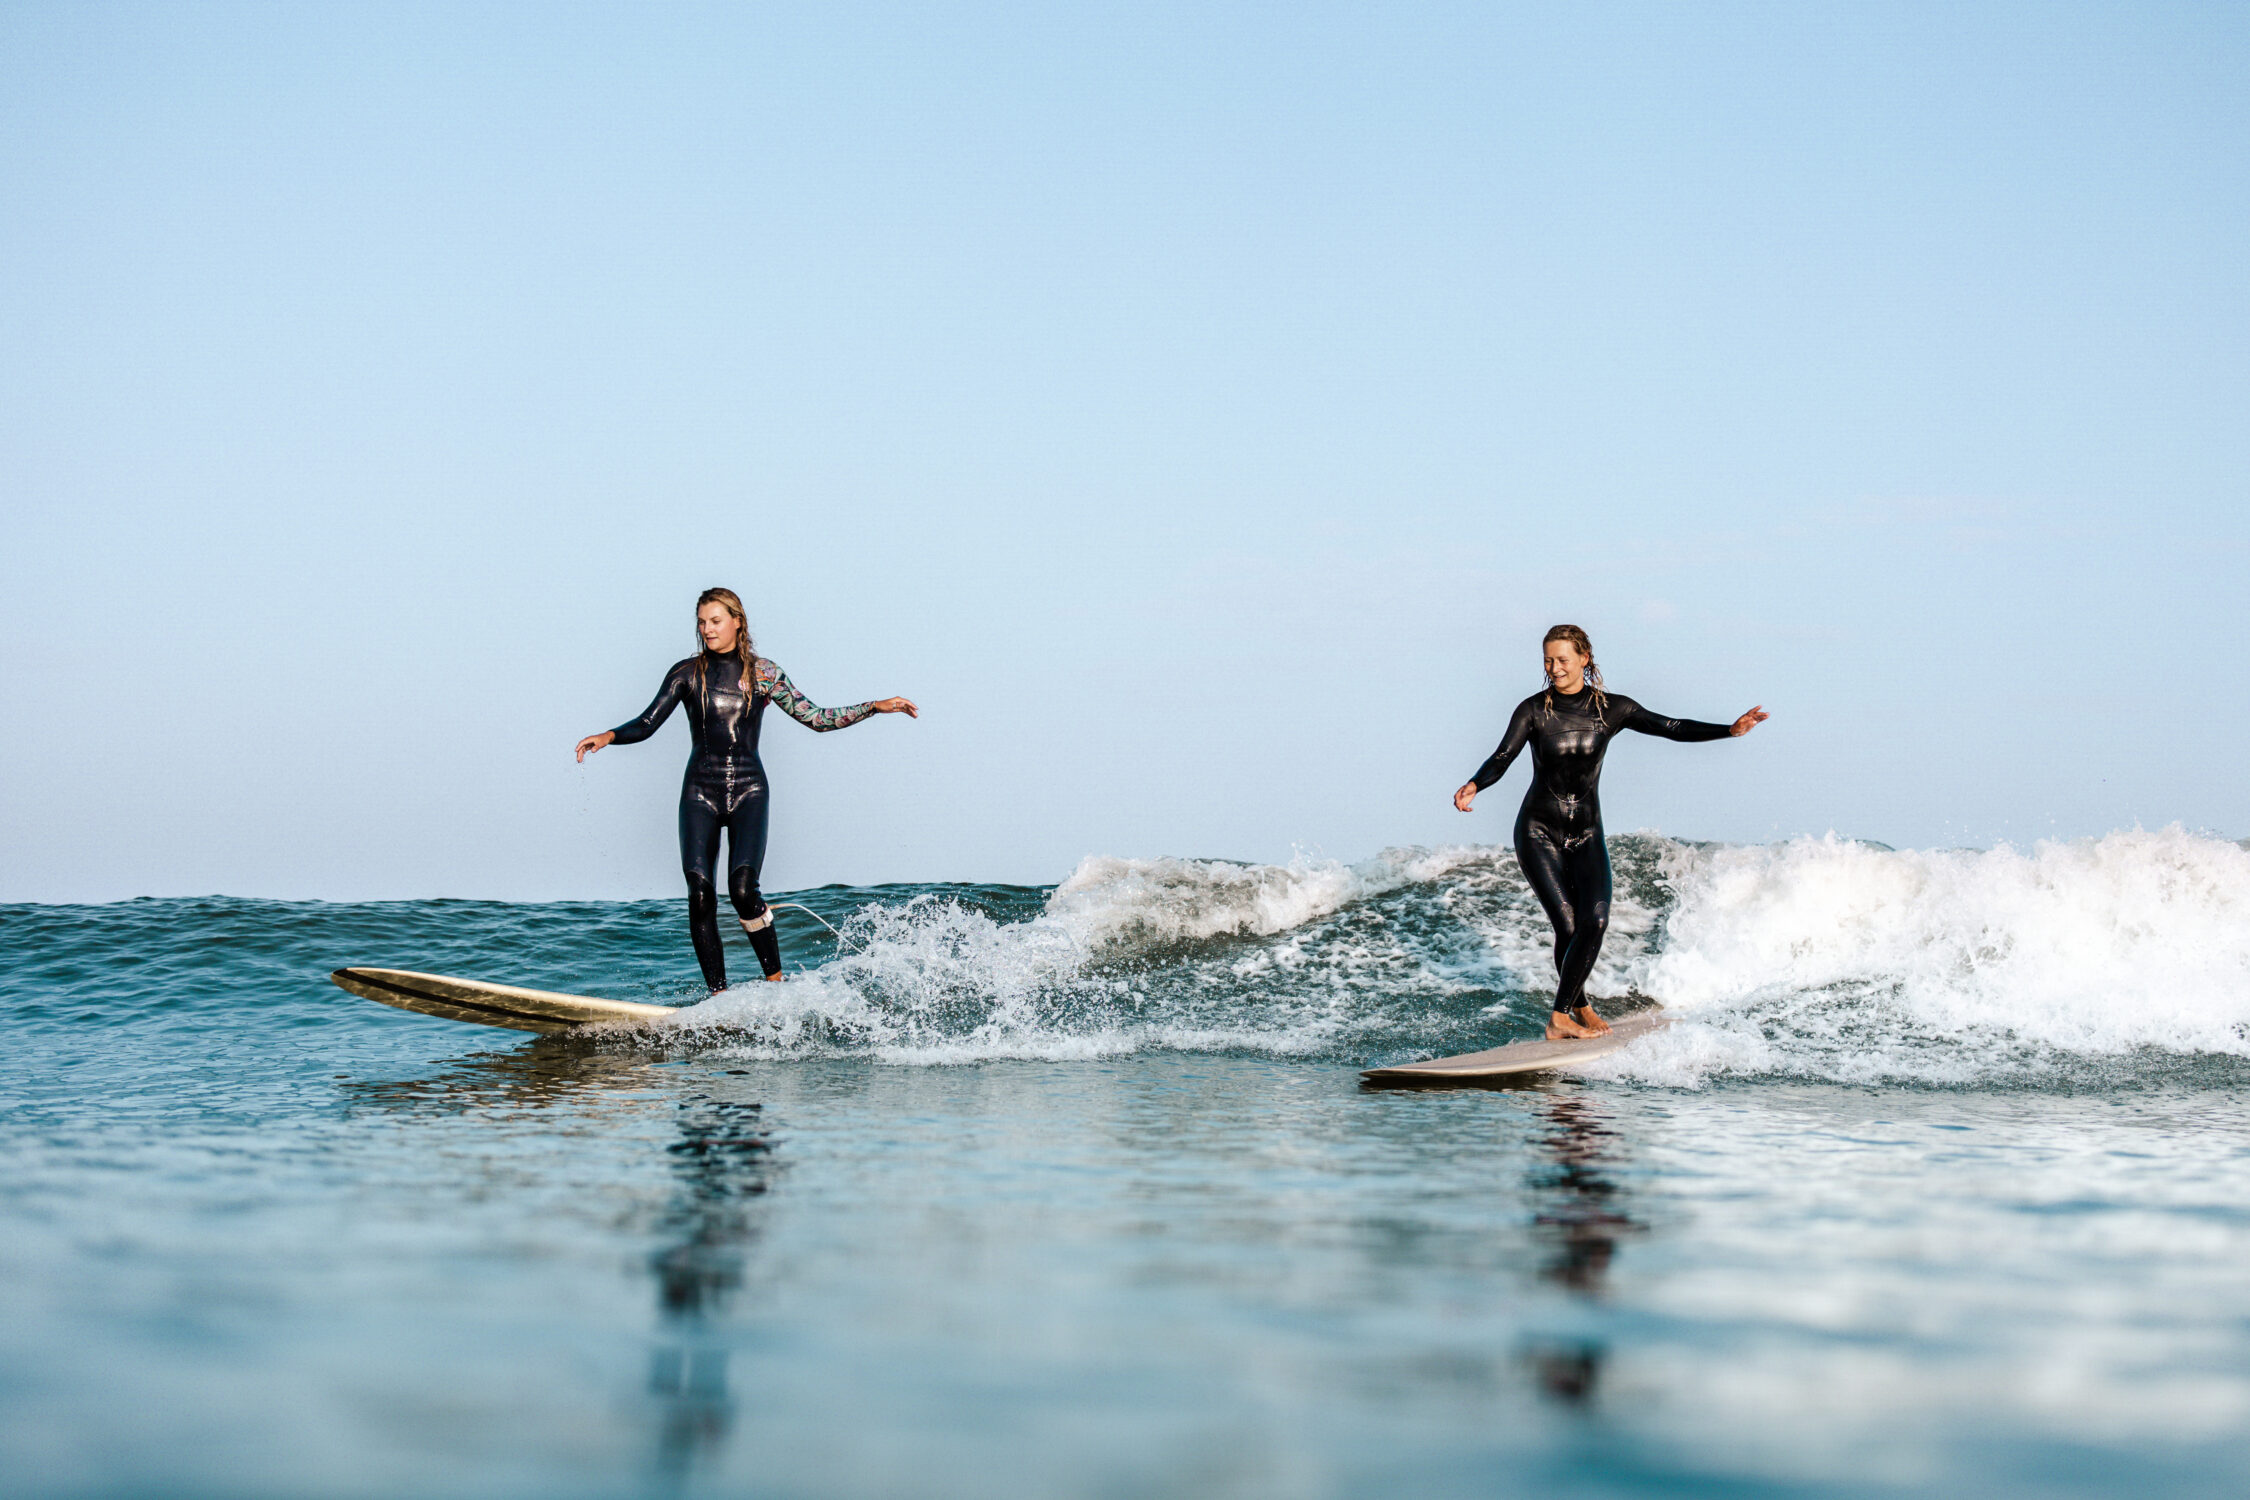 Actieve vakanties volwassenen: surfen met Ripstar